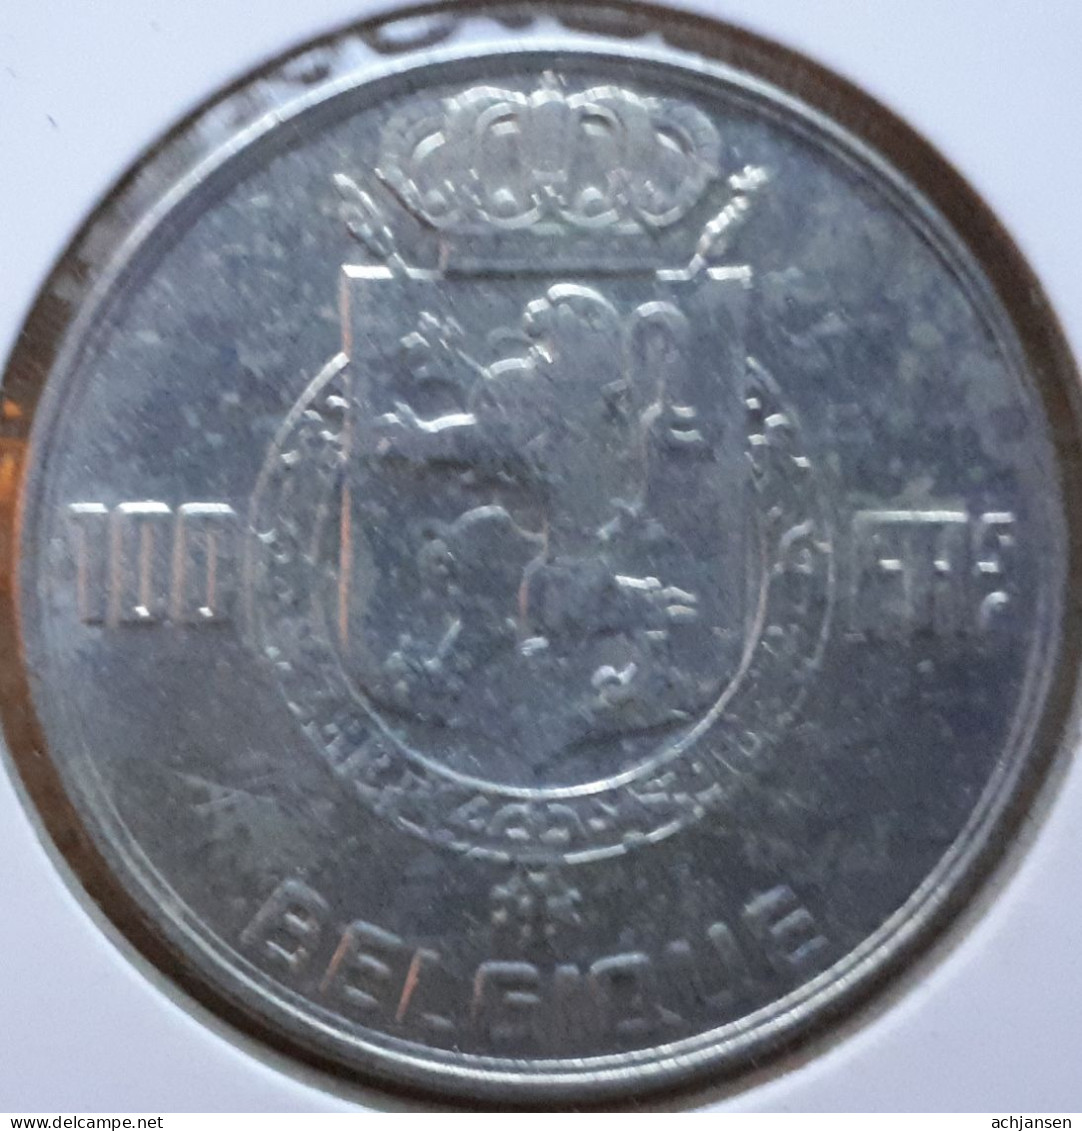 Sale: Belgium, 11 x 100 Francs 1948-1951 - silver